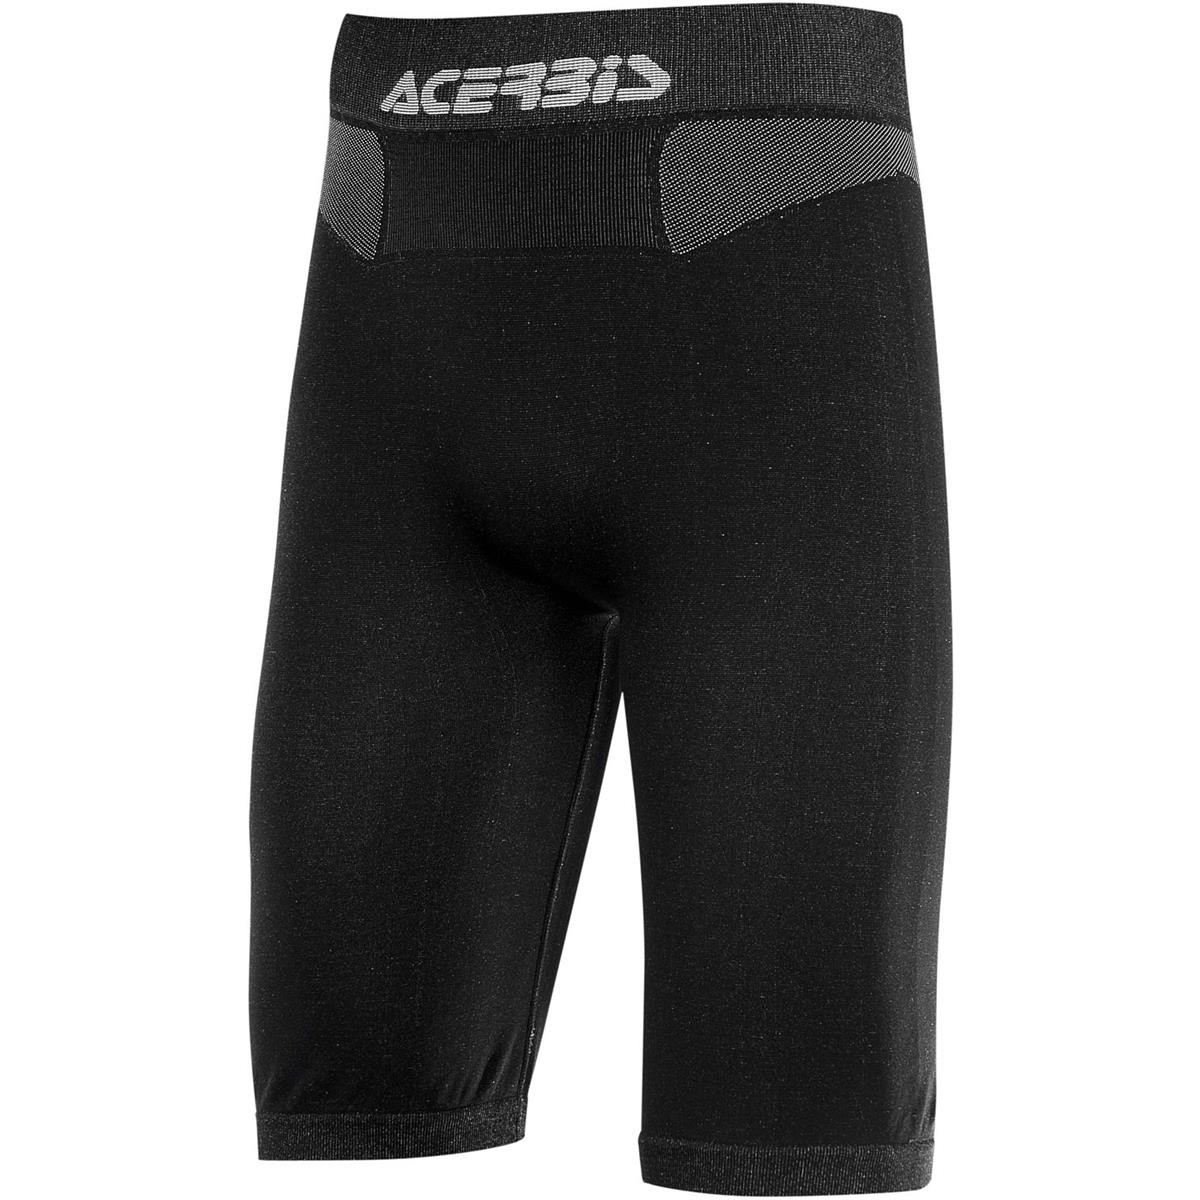 Acerbis Base Layer Shorts Ceramic Black